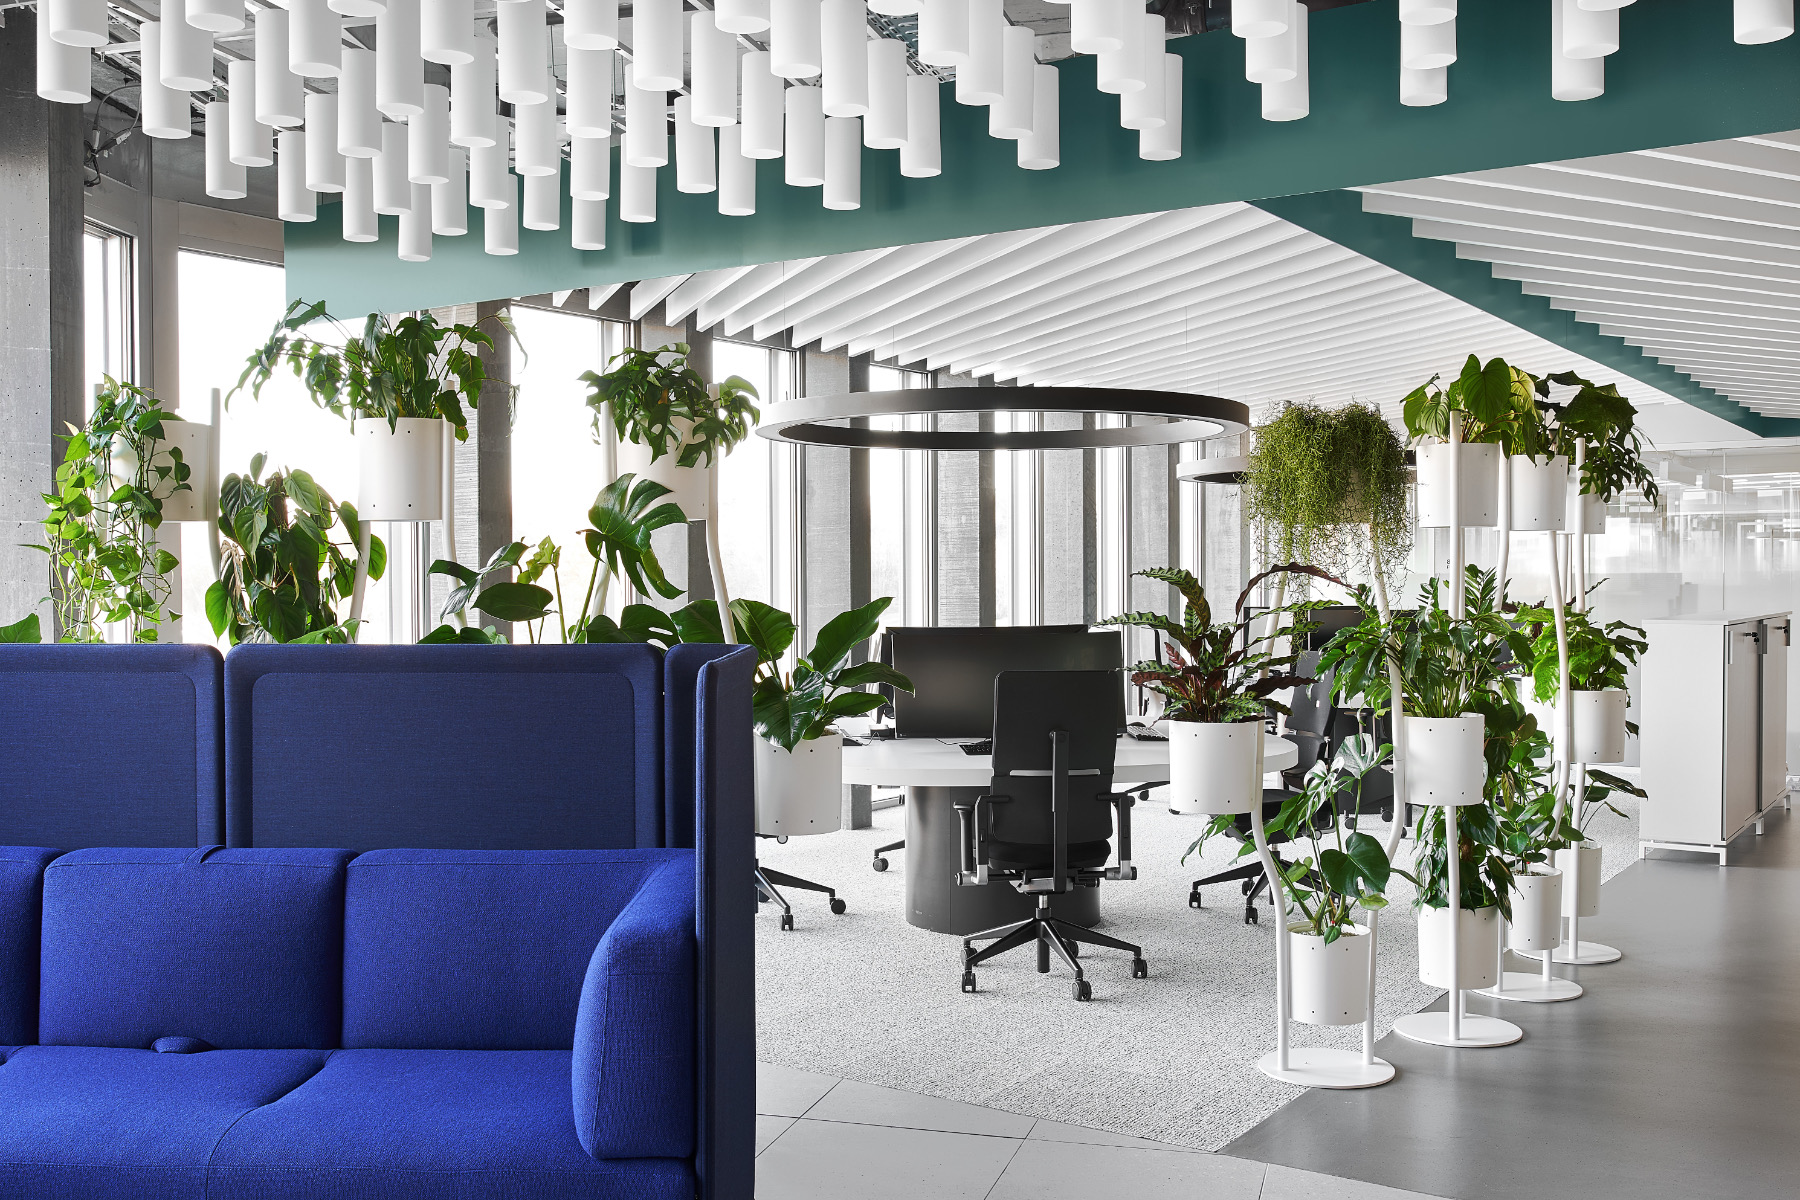 【某製薬会社のオフィスデザイン】- スイス, チューリッヒのワークペース